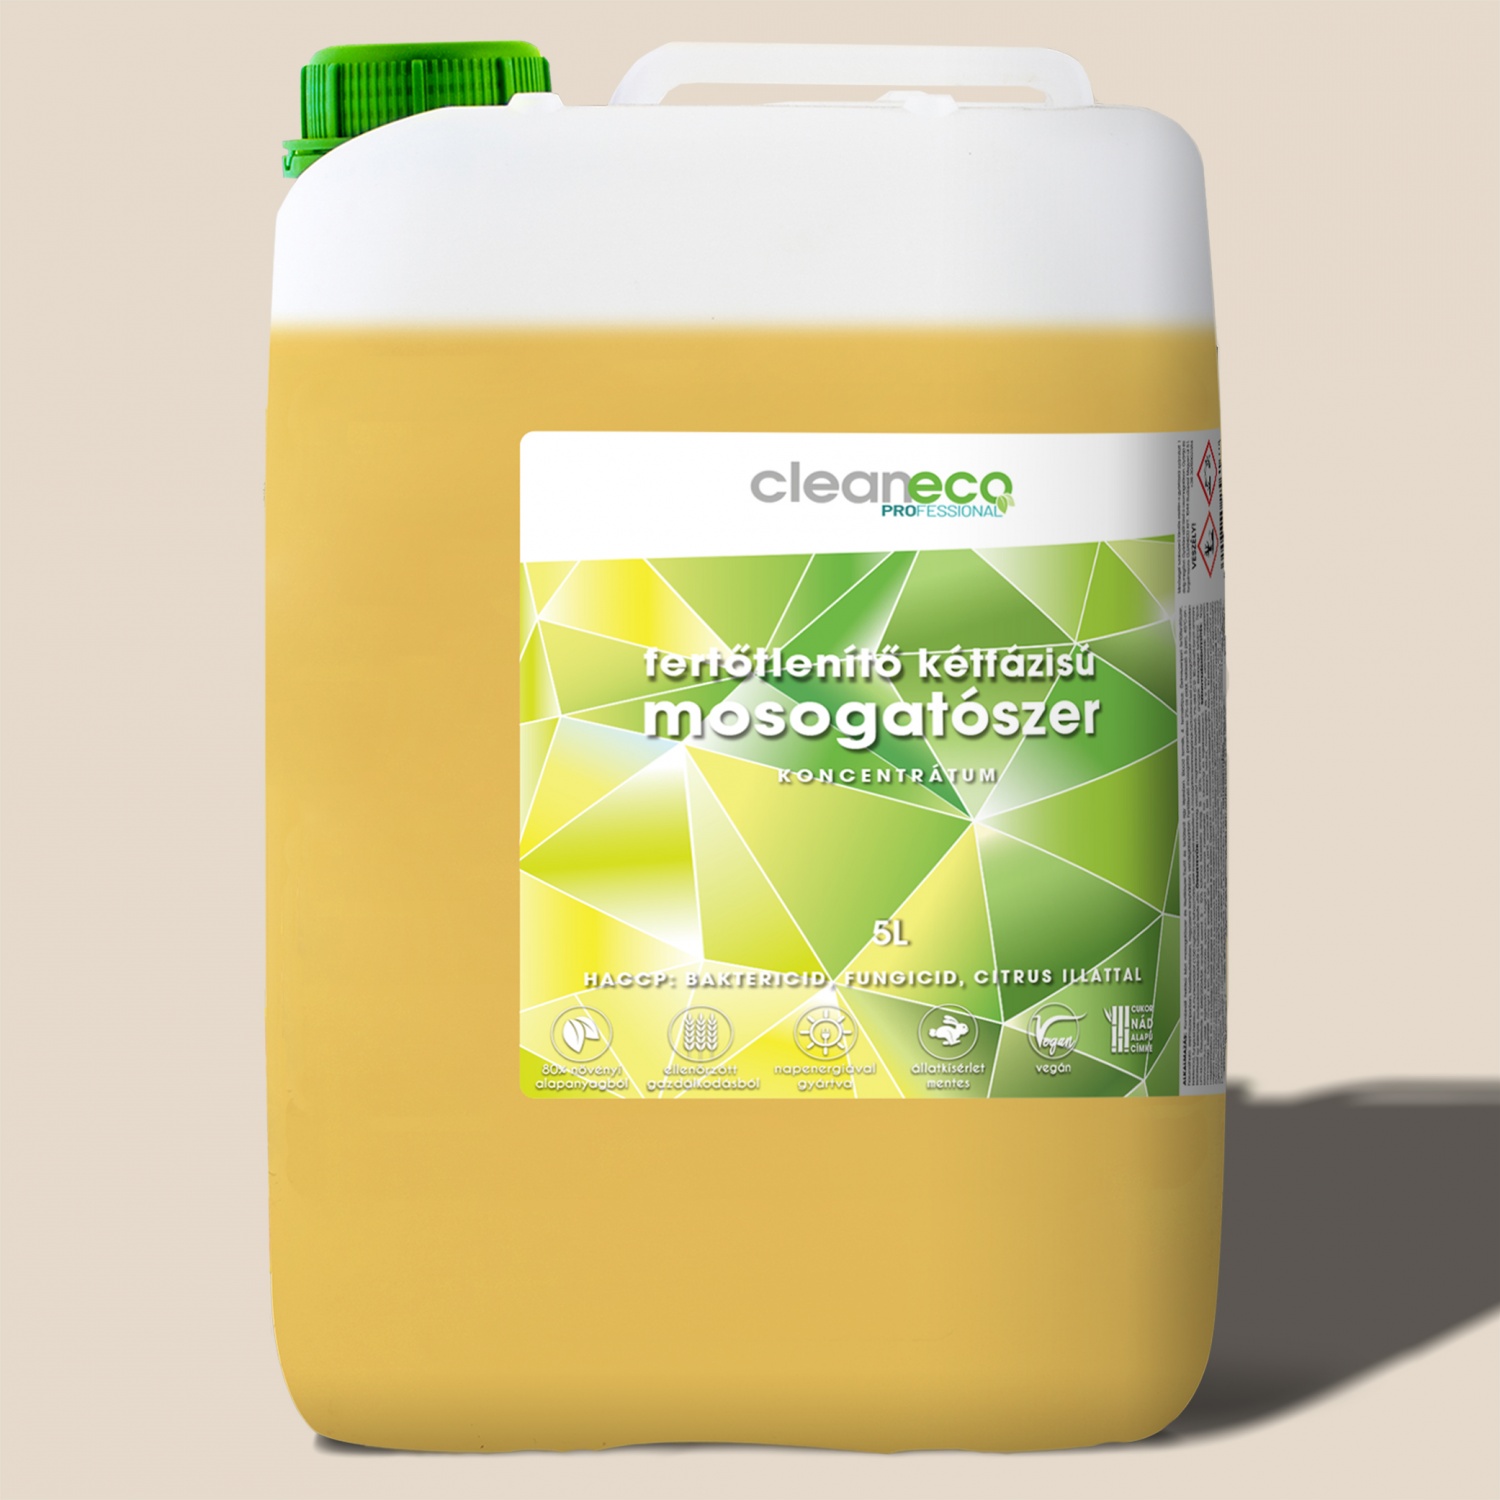 Cleaneco Fertőtlenítő kétfázisú mosogatószer XXL, 5liter